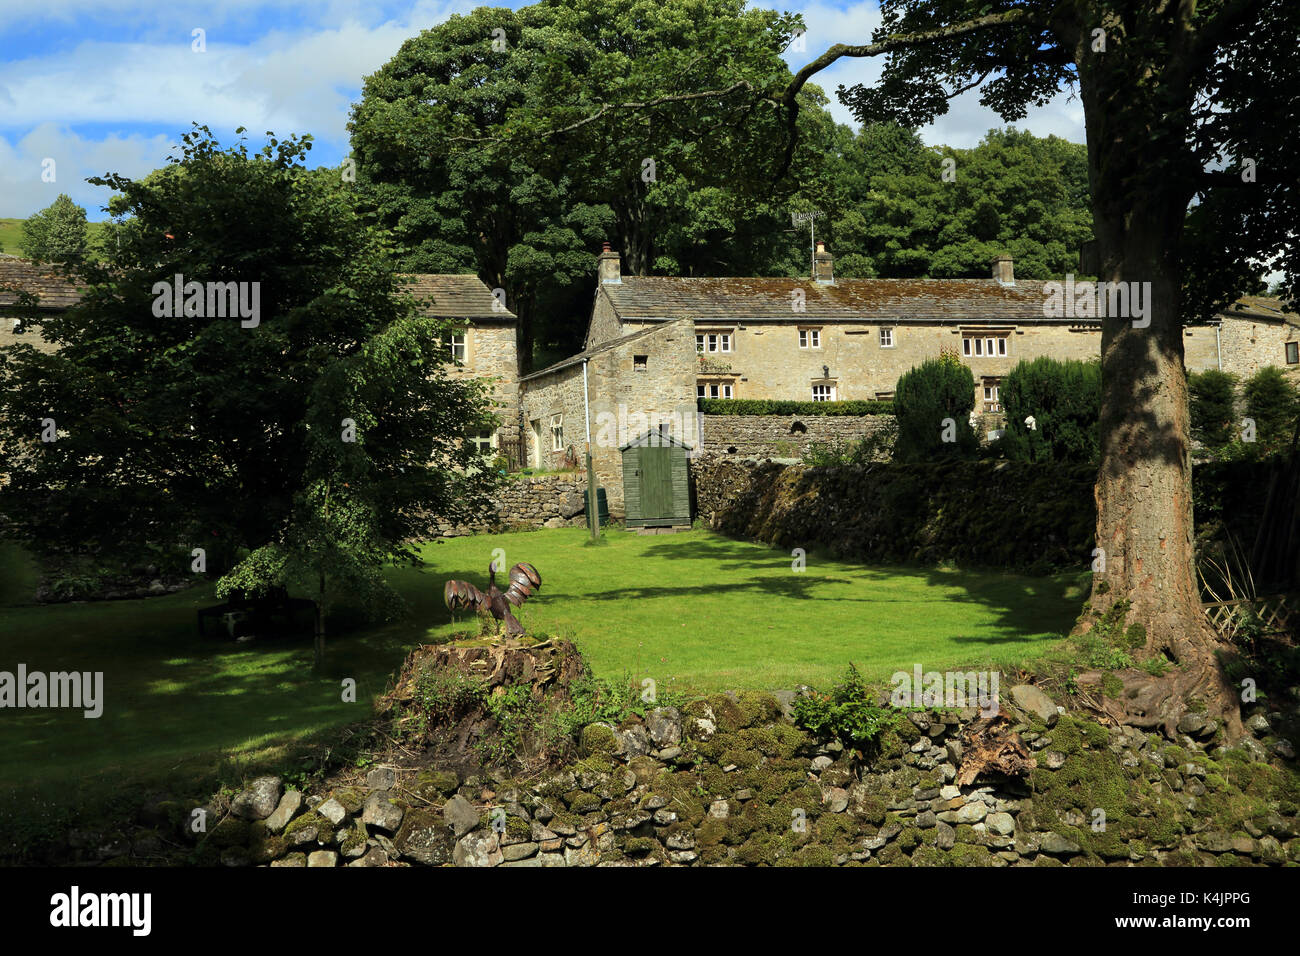 Blick auf traditionelle Dales Häuser und Gärten von Scabbate Tor in Kettlewell auf Yorkshire Dales, North Yorkshire, England, Vereinigtes Königreich Stockfoto